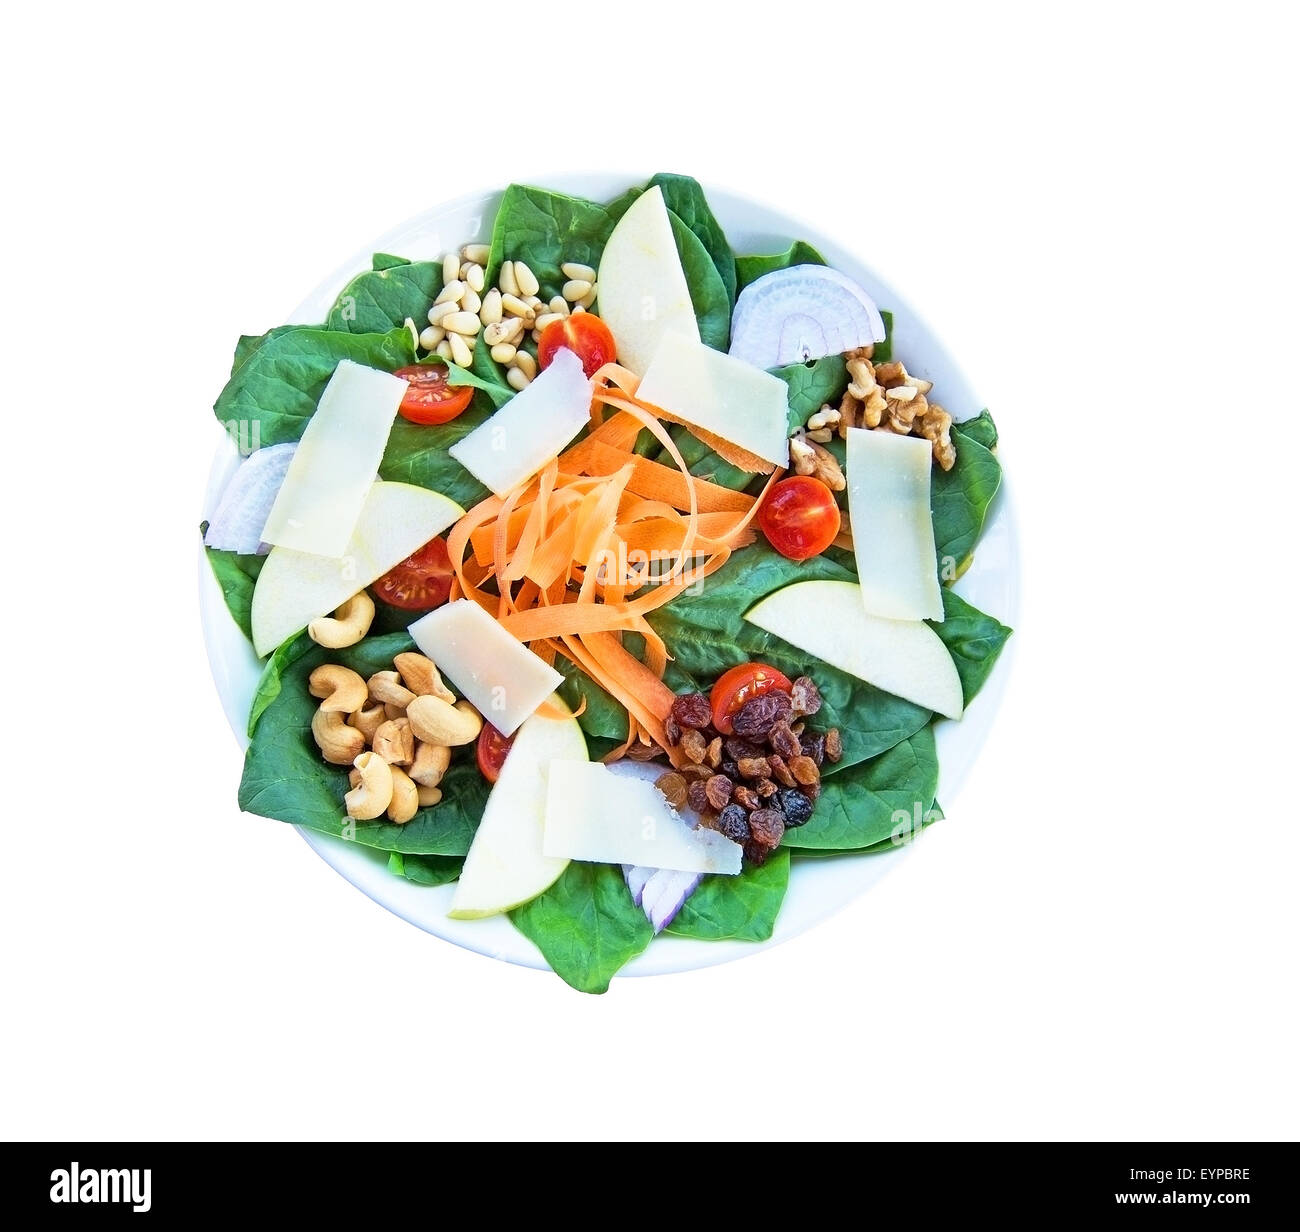 Fresca insalata di spinaci con parmigiano, dadi, carote, pomodori, pere, noci e uvetta. Il cibo sulla piastra bianca. Foto Stock